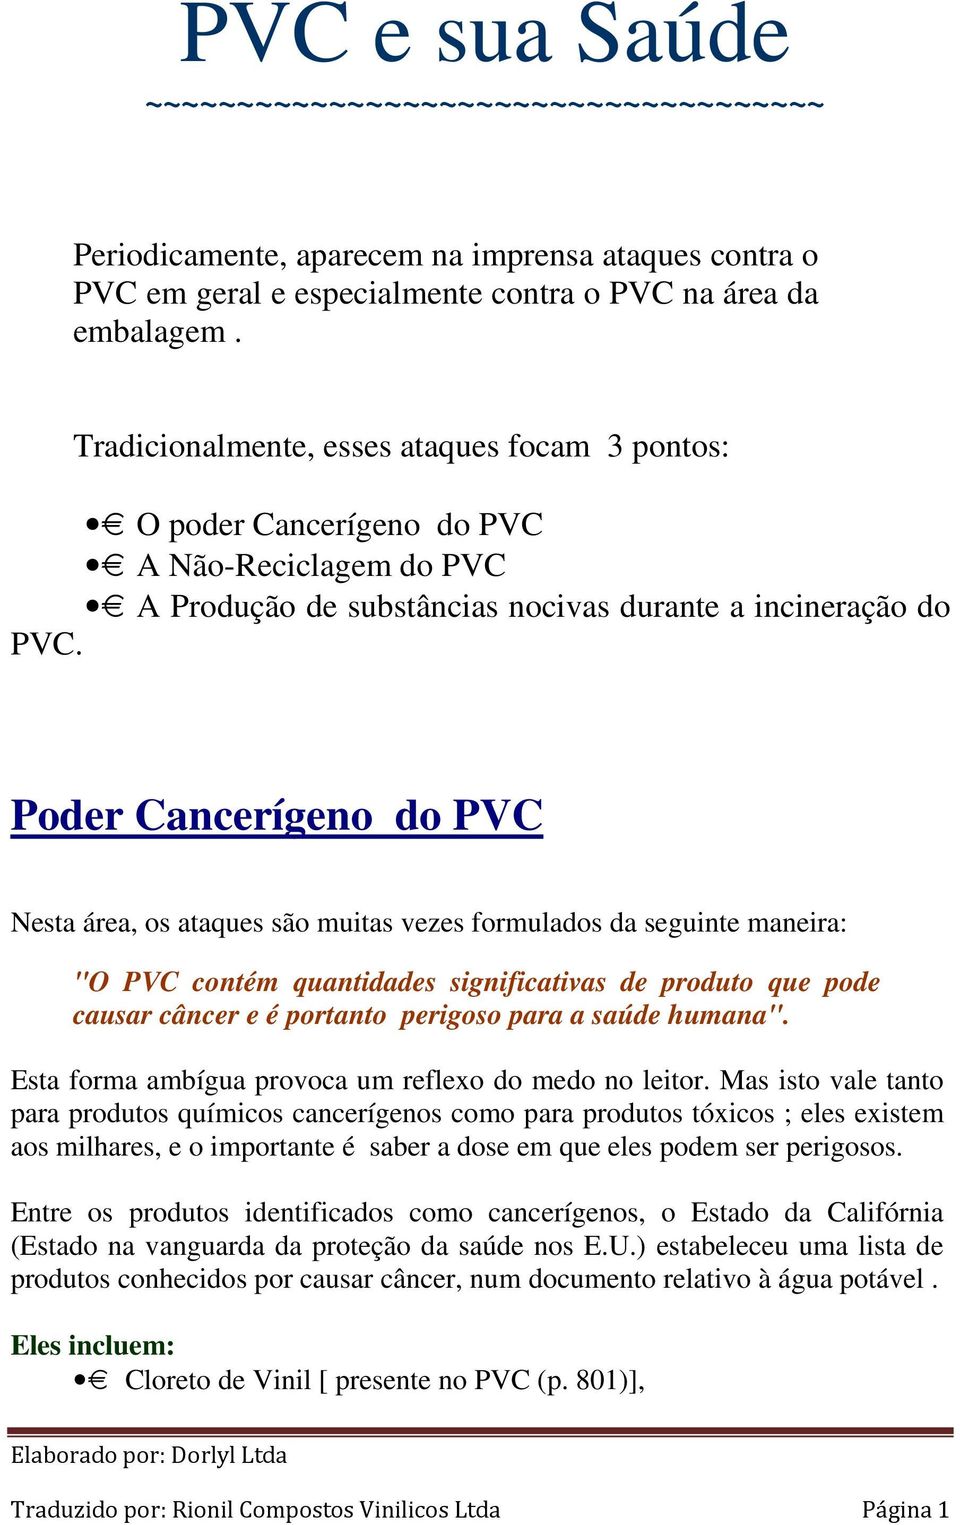 Poder Cancerígeno do PVC Nesta área, os ataques são muitas vezes formulados da seguinte maneira: "O PVC contém quantidades significativas de produto que pode causar câncer e é portanto perigoso para